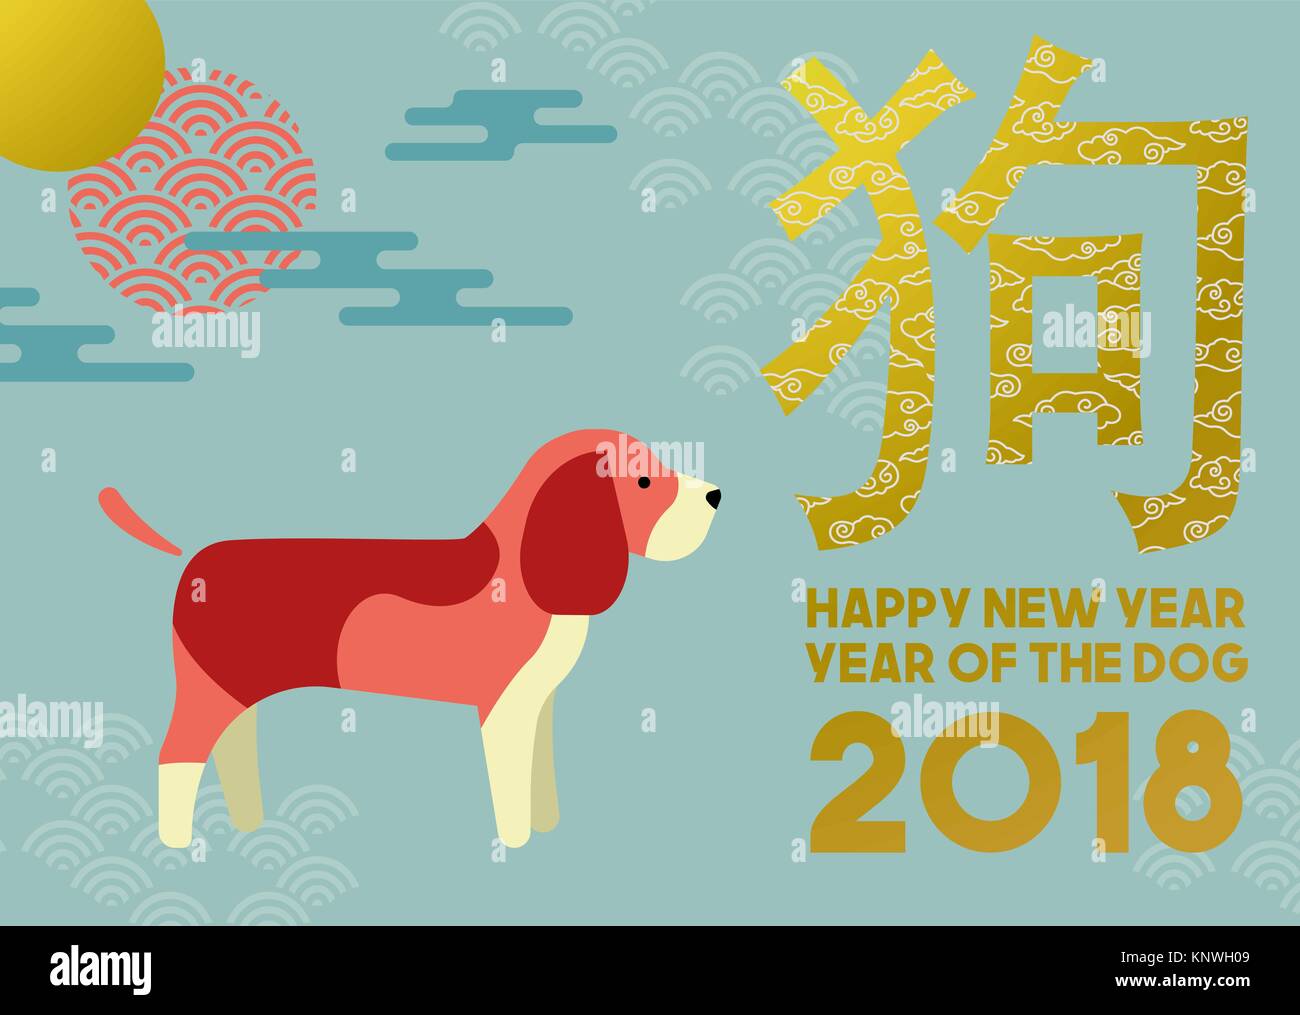 Chinesisches neues Jahr des Hundes 2018 Abbildung im modernen Stil mit Beagle, traditionellen asiatischen Ornamenten und Dekoration. EPS 10 Vektor. Stock Vektor